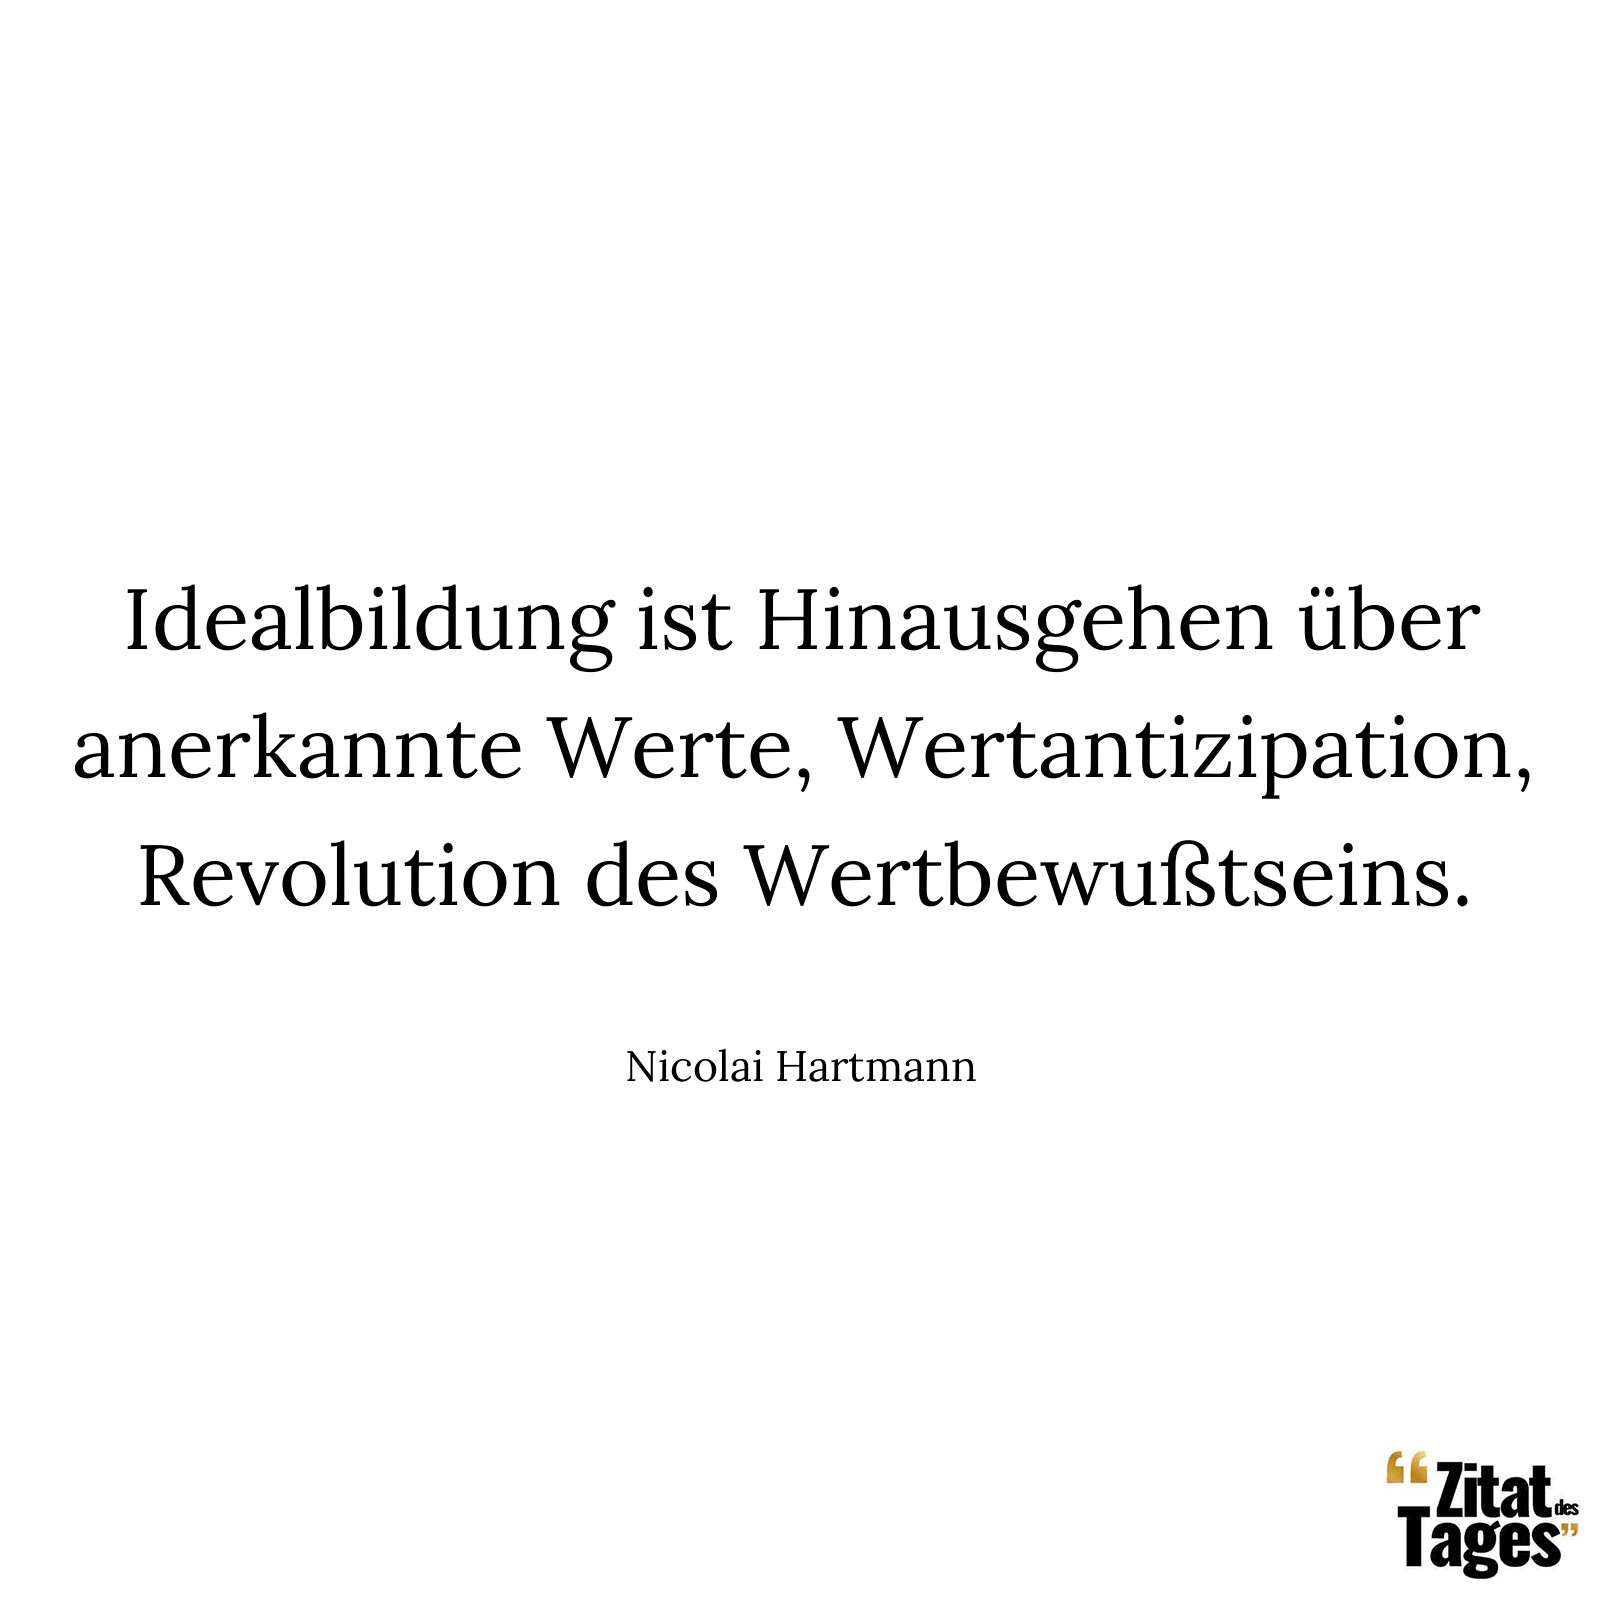 Idealbildung ist Hinausgehen über anerkannte Werte, Wertantizipation, Revolution des Wertbewußtseins. - Nicolai Hartmann